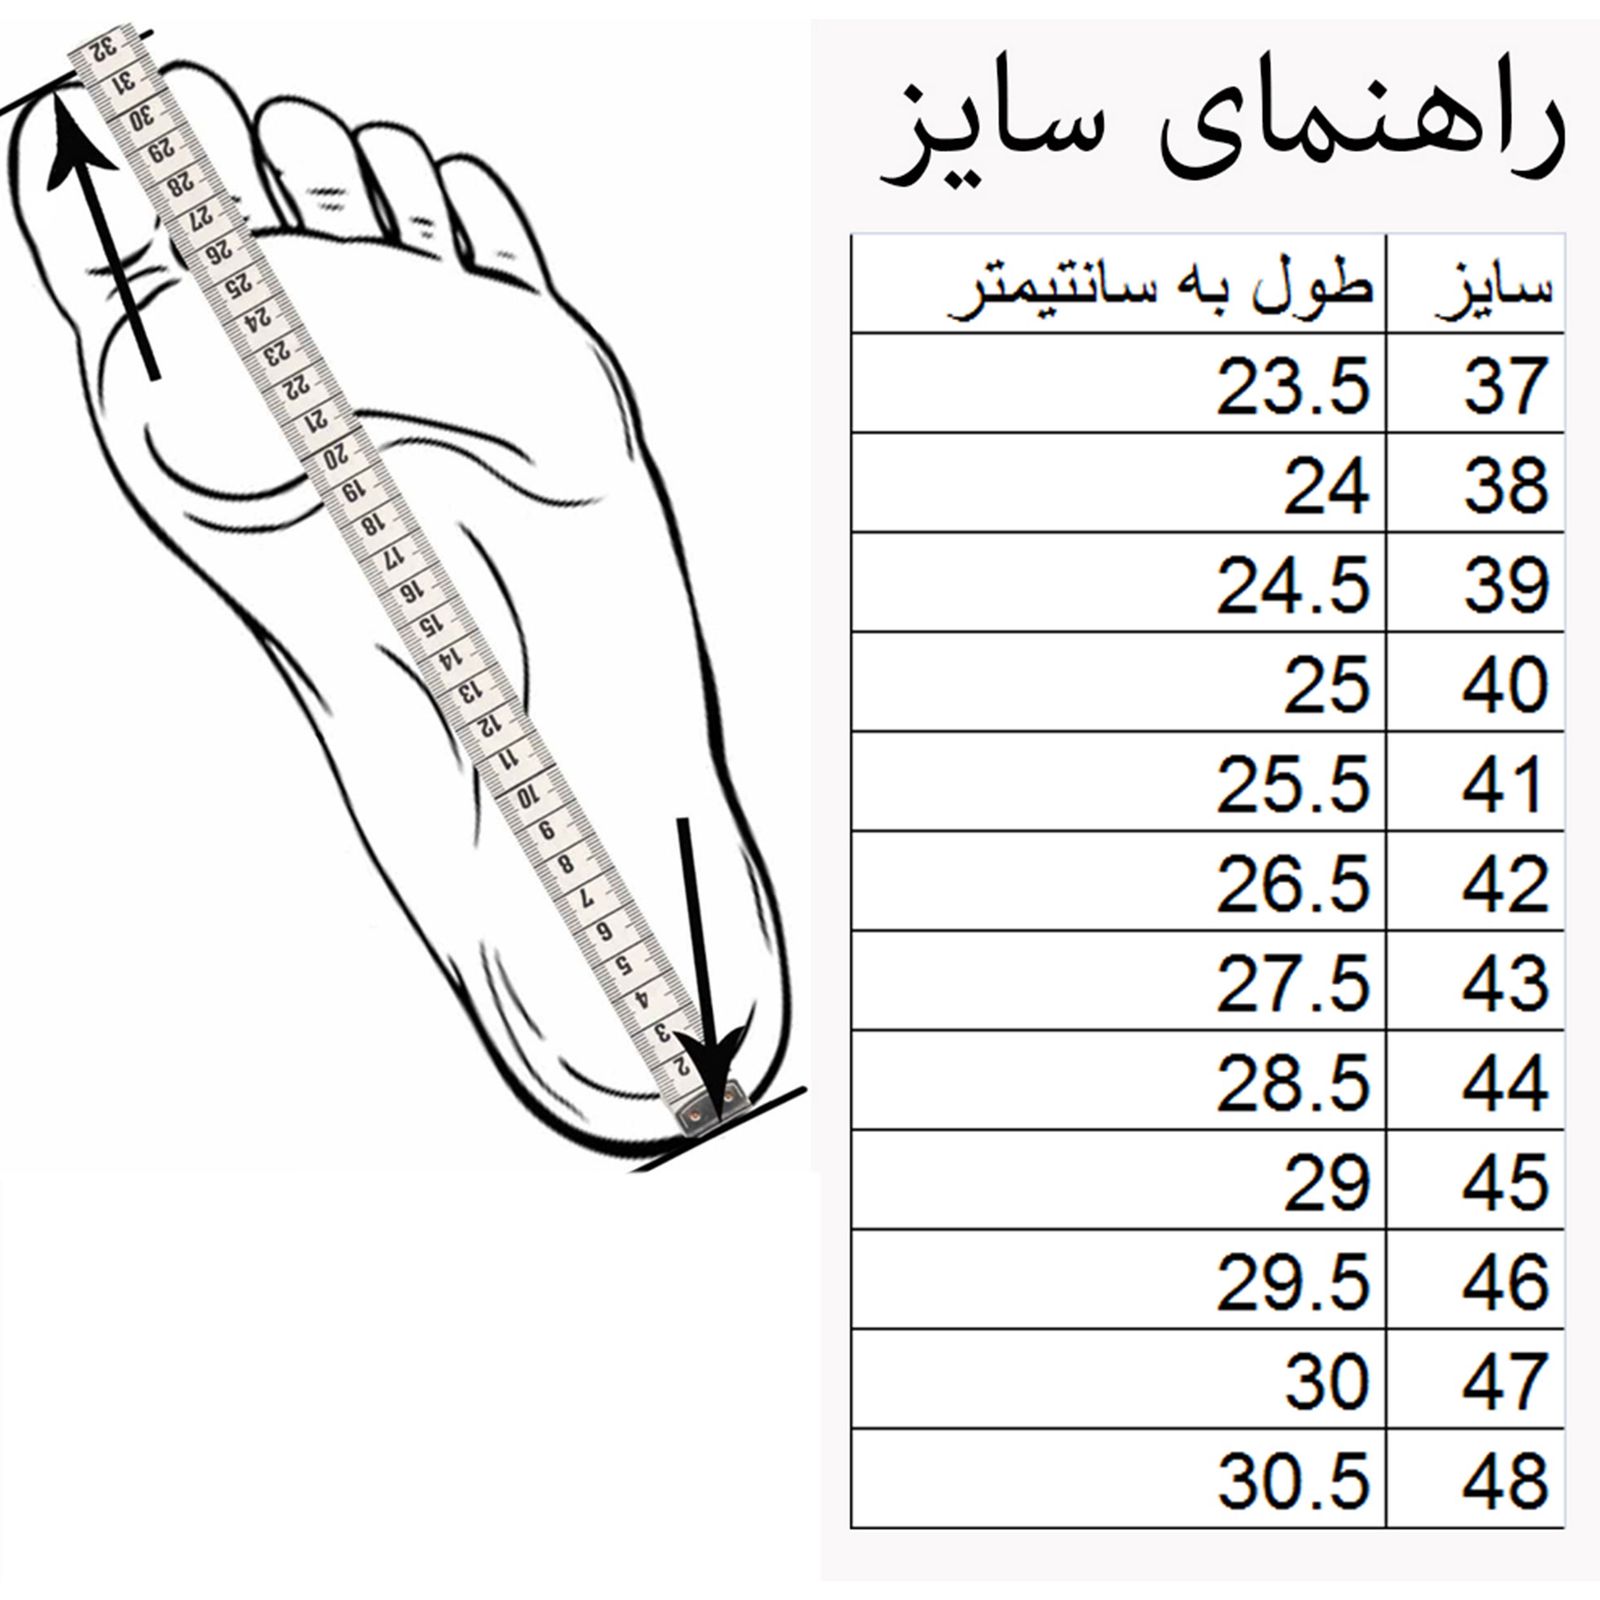 کفش مخصوص پیاده روی مردانه کفش سعیدی مدل 002136 کد mu 100 -  - 7